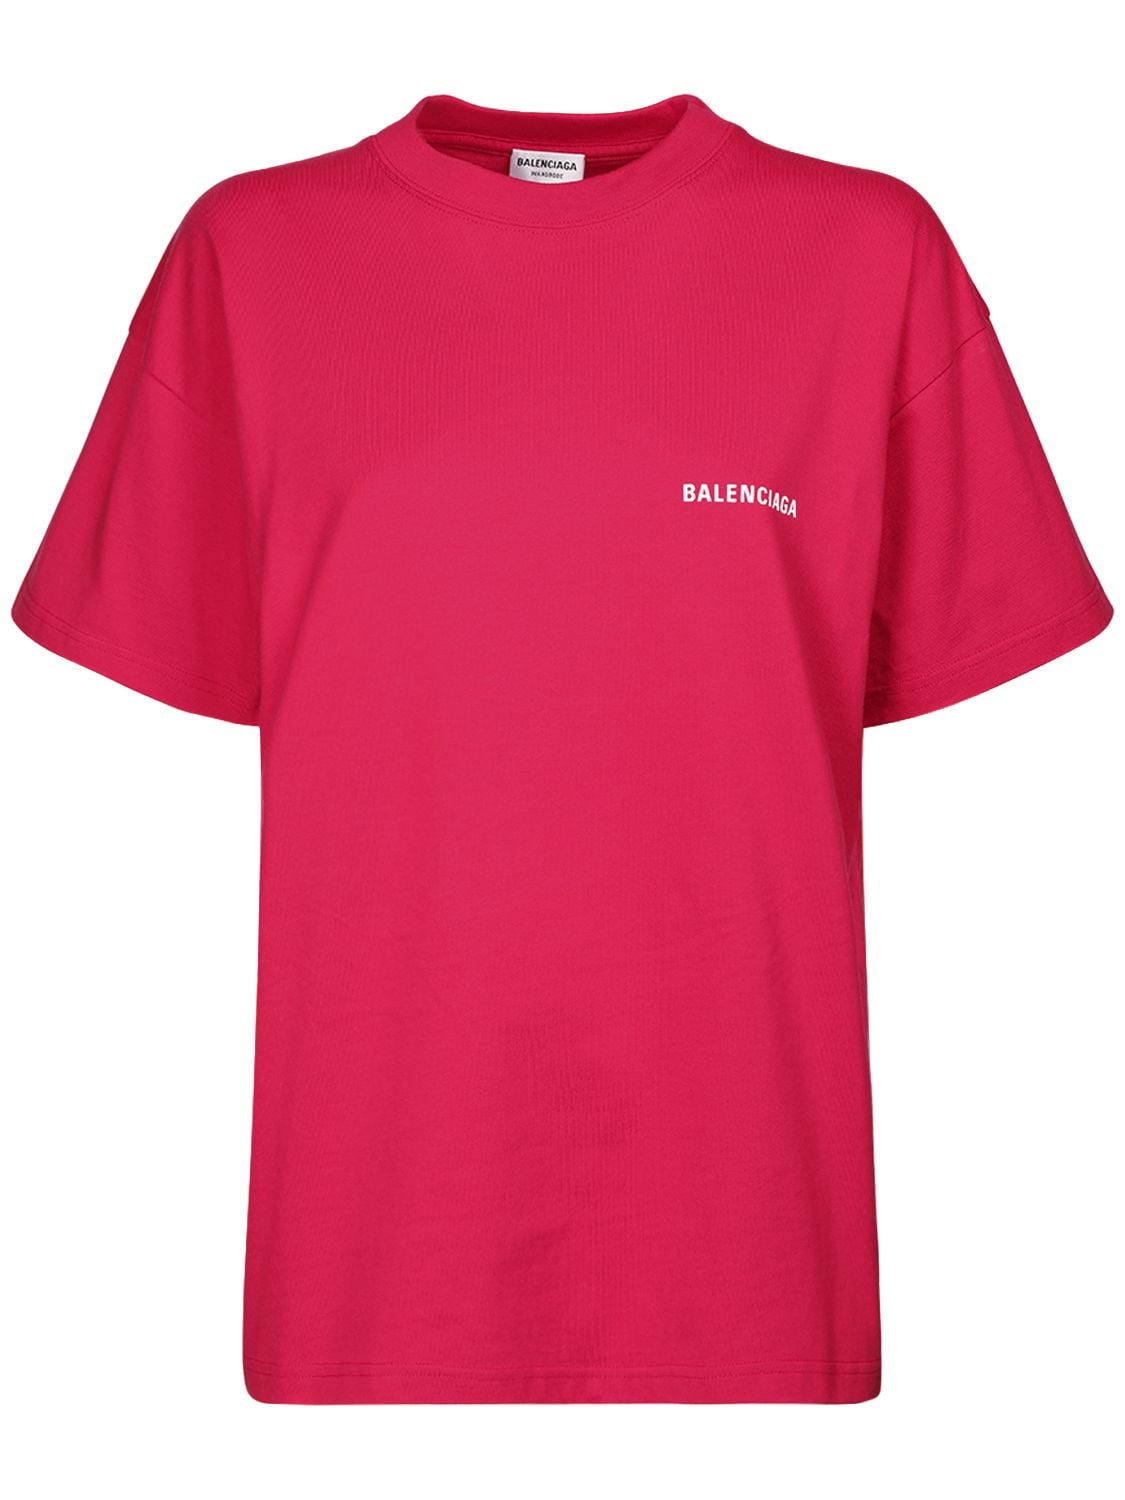 Balenciaga T-shirts PRINTED LOGO MEDIUM FIT JERSEY T-SHIRT